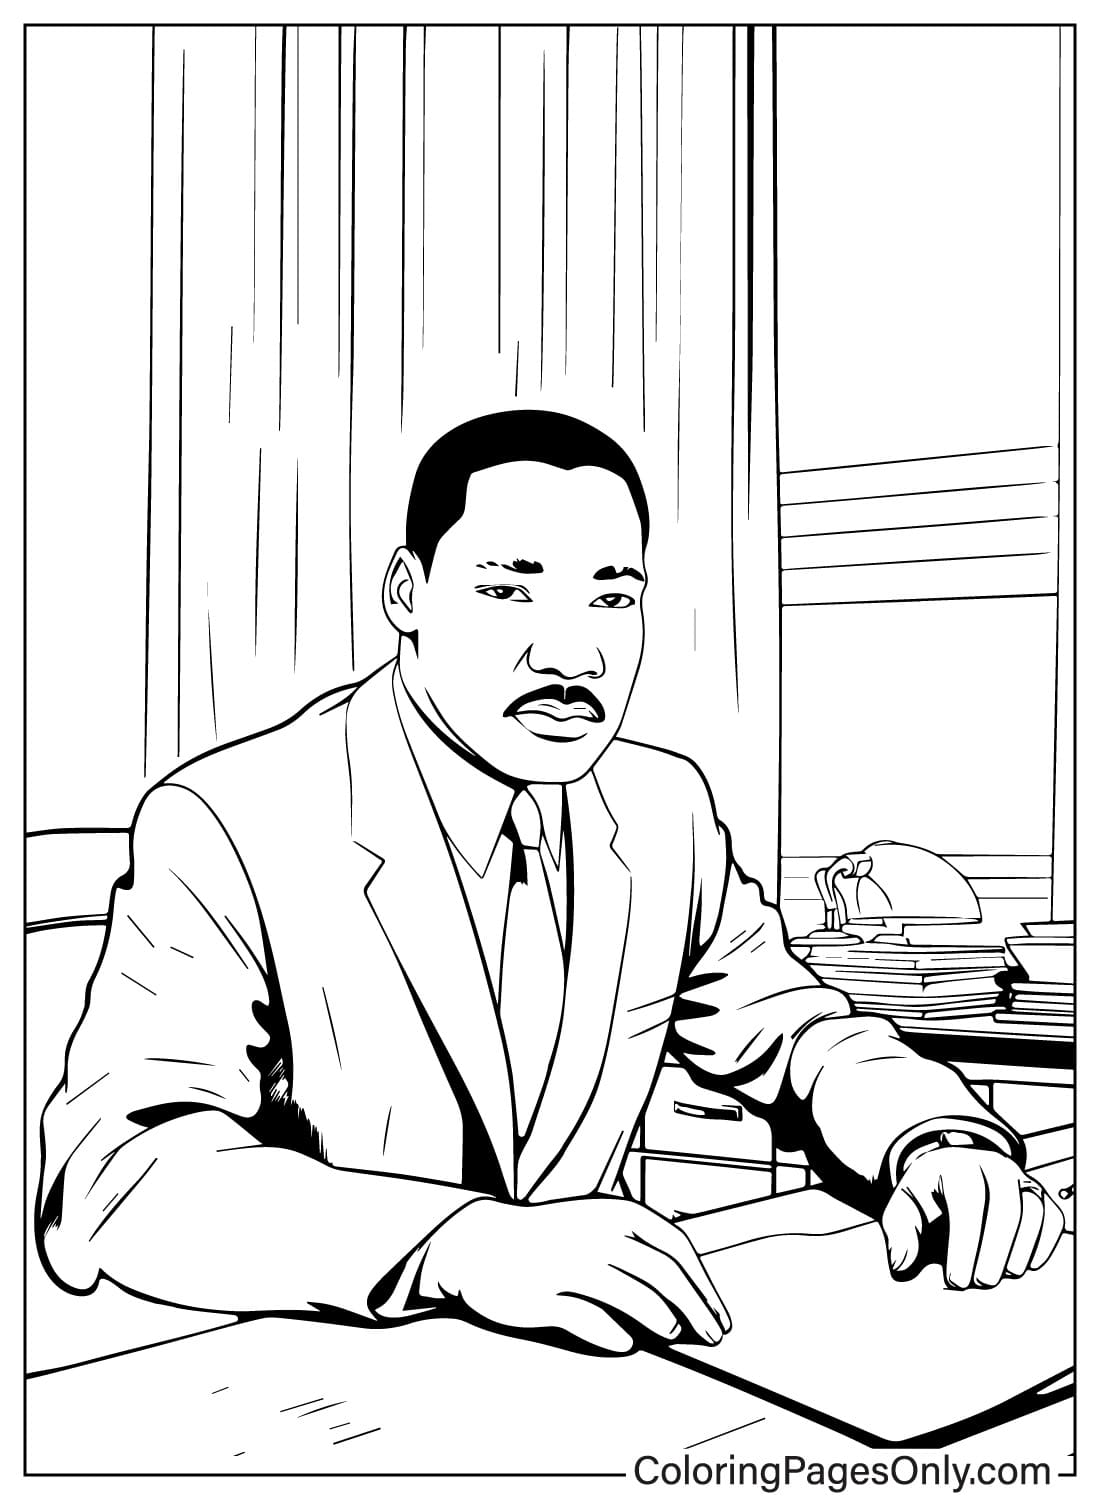 Martin Luther King Jr kleurplaat van Martin Luther King Jr